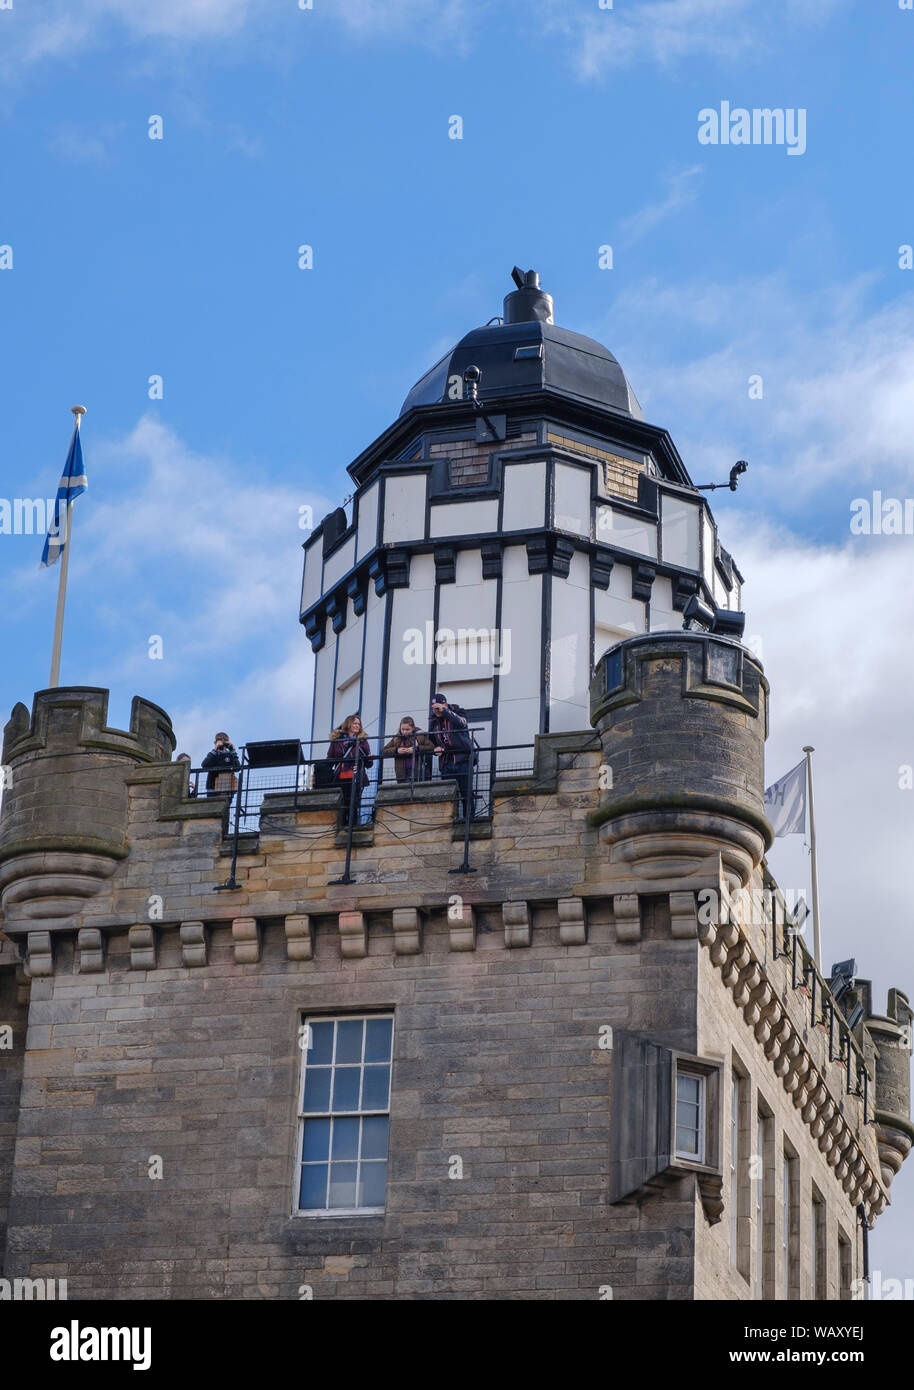 Les touristes en haut de l'Appareil Noir tour a une attraction touristique célèbre dans la colline du Château de Royal Mile, Édimbourg, Vieille Ville Banque D'Images